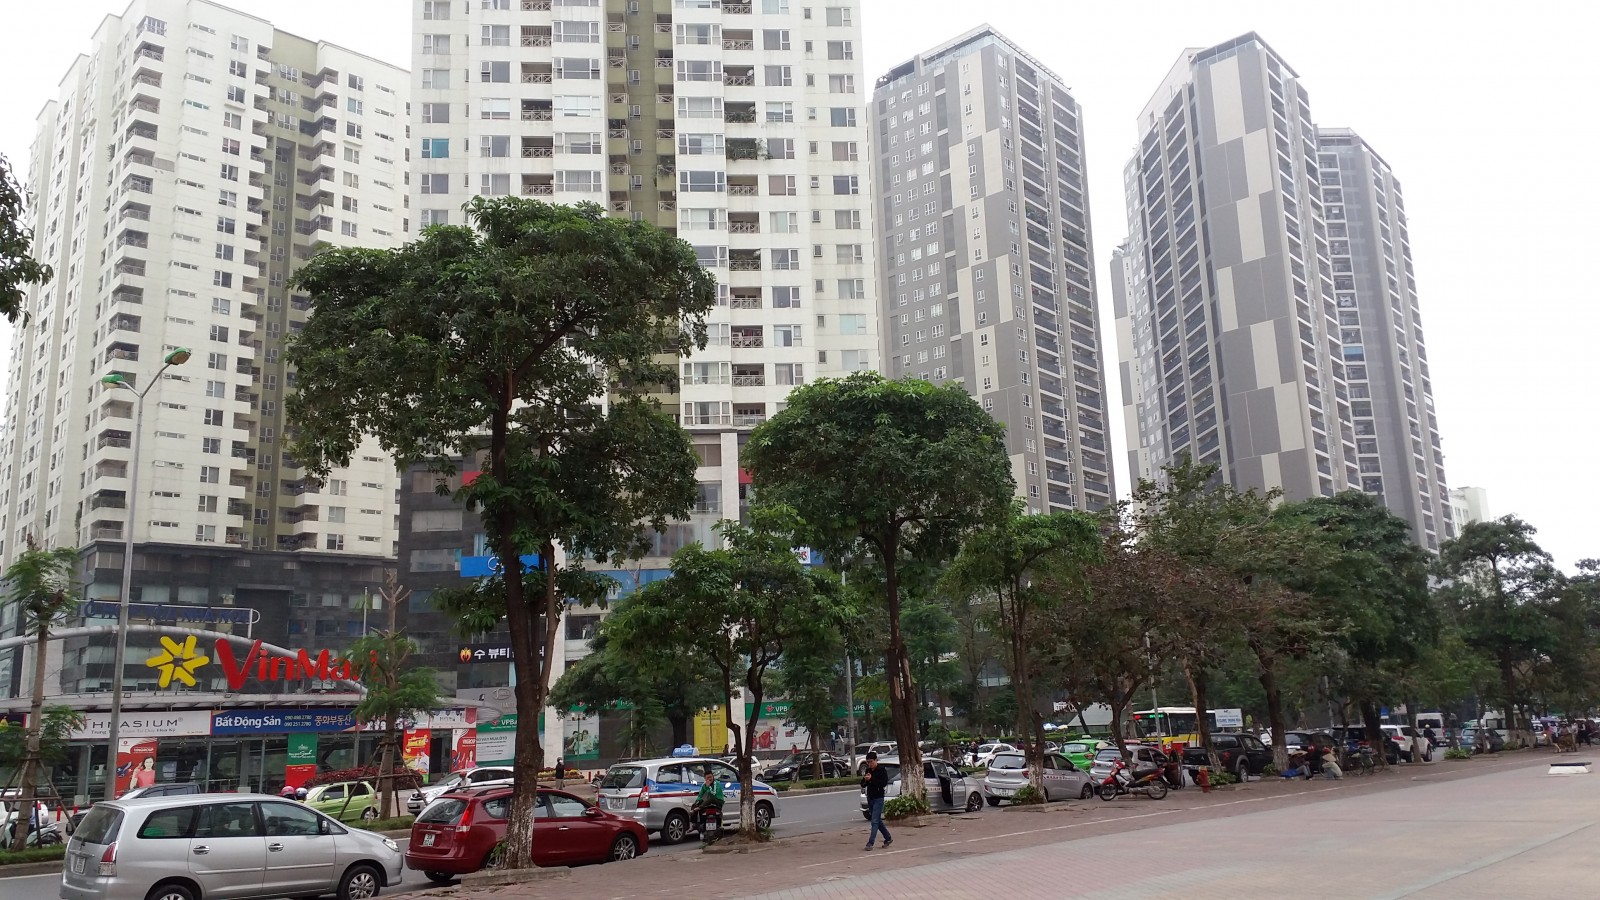 Một góc khu đô thị Trung Hòa - Nhân Chính với san sát cao ốc chọc trời. Ảnh: Tuấn Minh